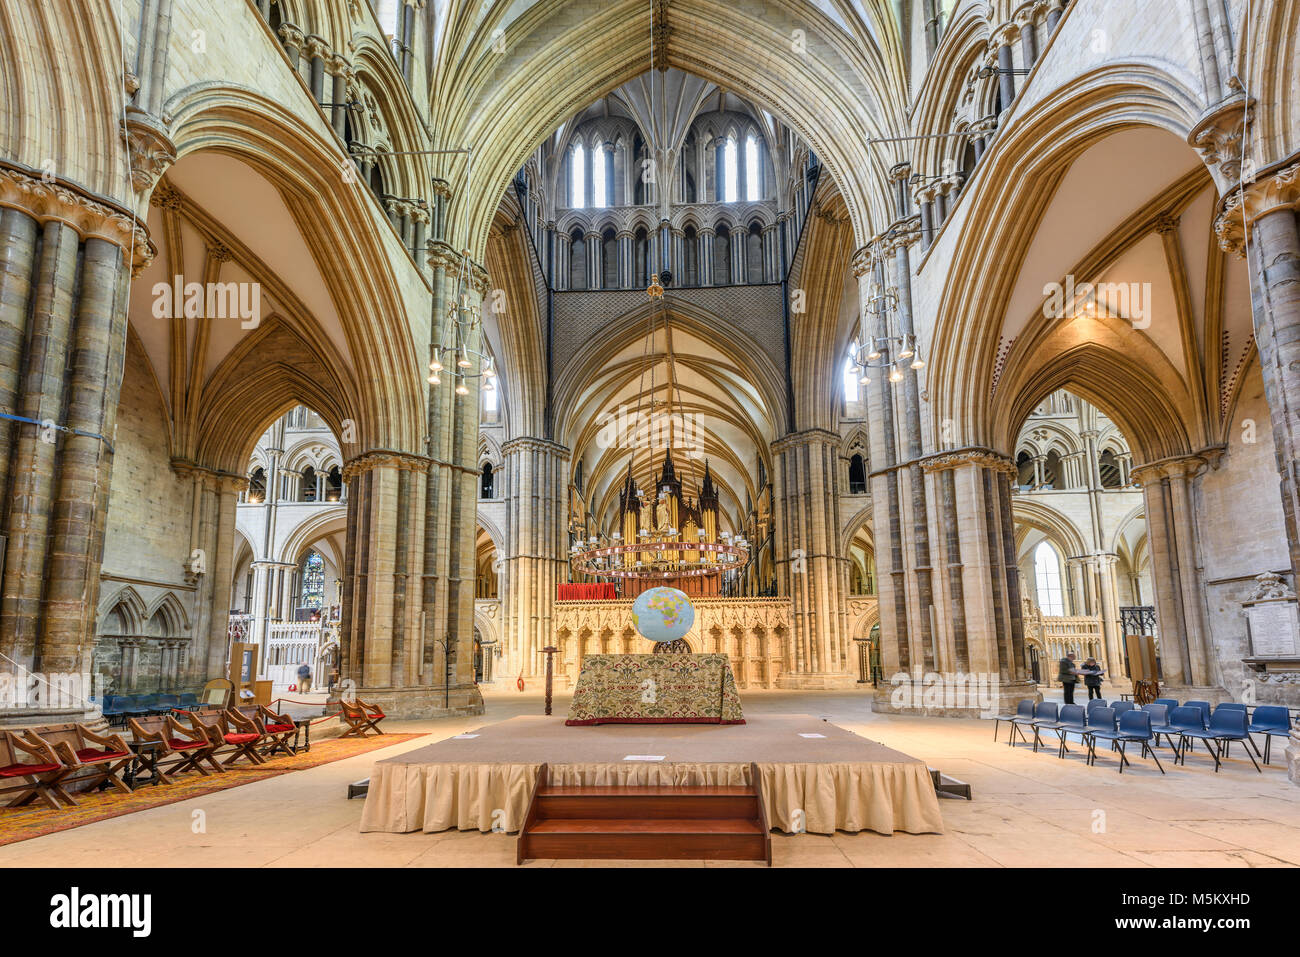 L'altare all'estremità est della navata nel medievale cristiana cattedrale costruita dai Normanni a Lincoln, Inghilterra. Foto Stock